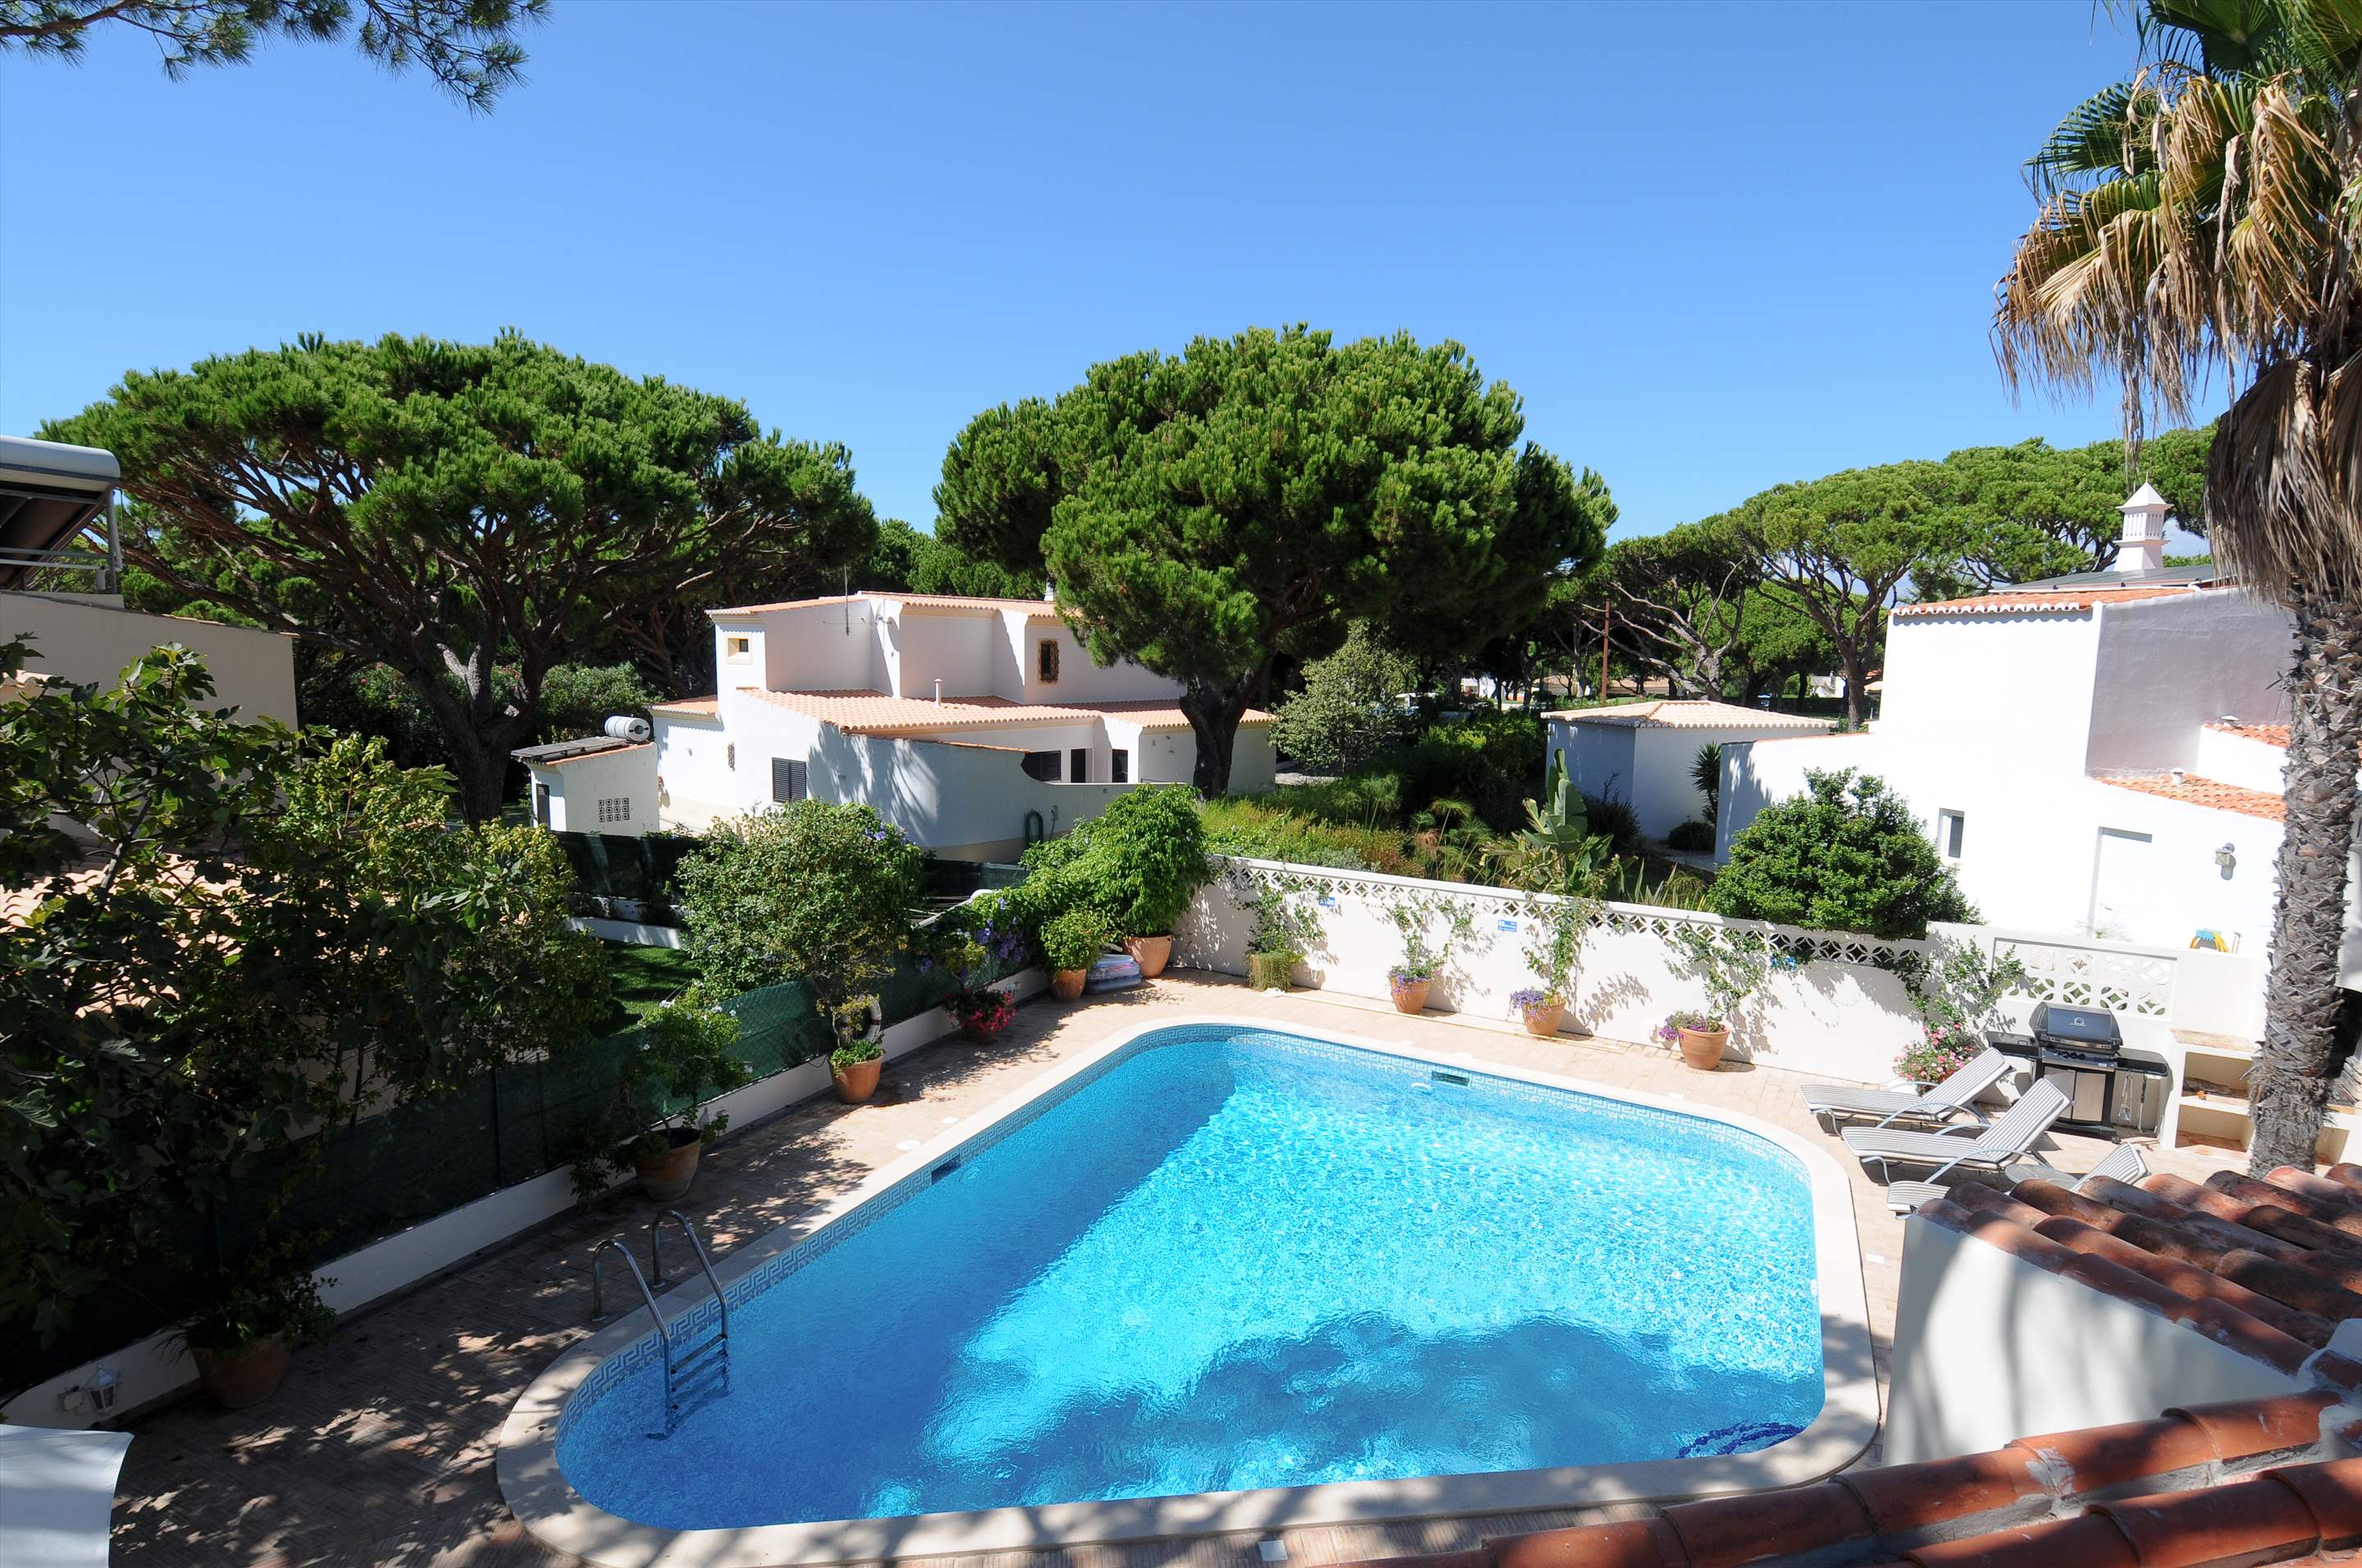 Casa Blanca, 4 Bed Rental, 4 bedroom villa in Vale do Lobo, Algarve Photo #7